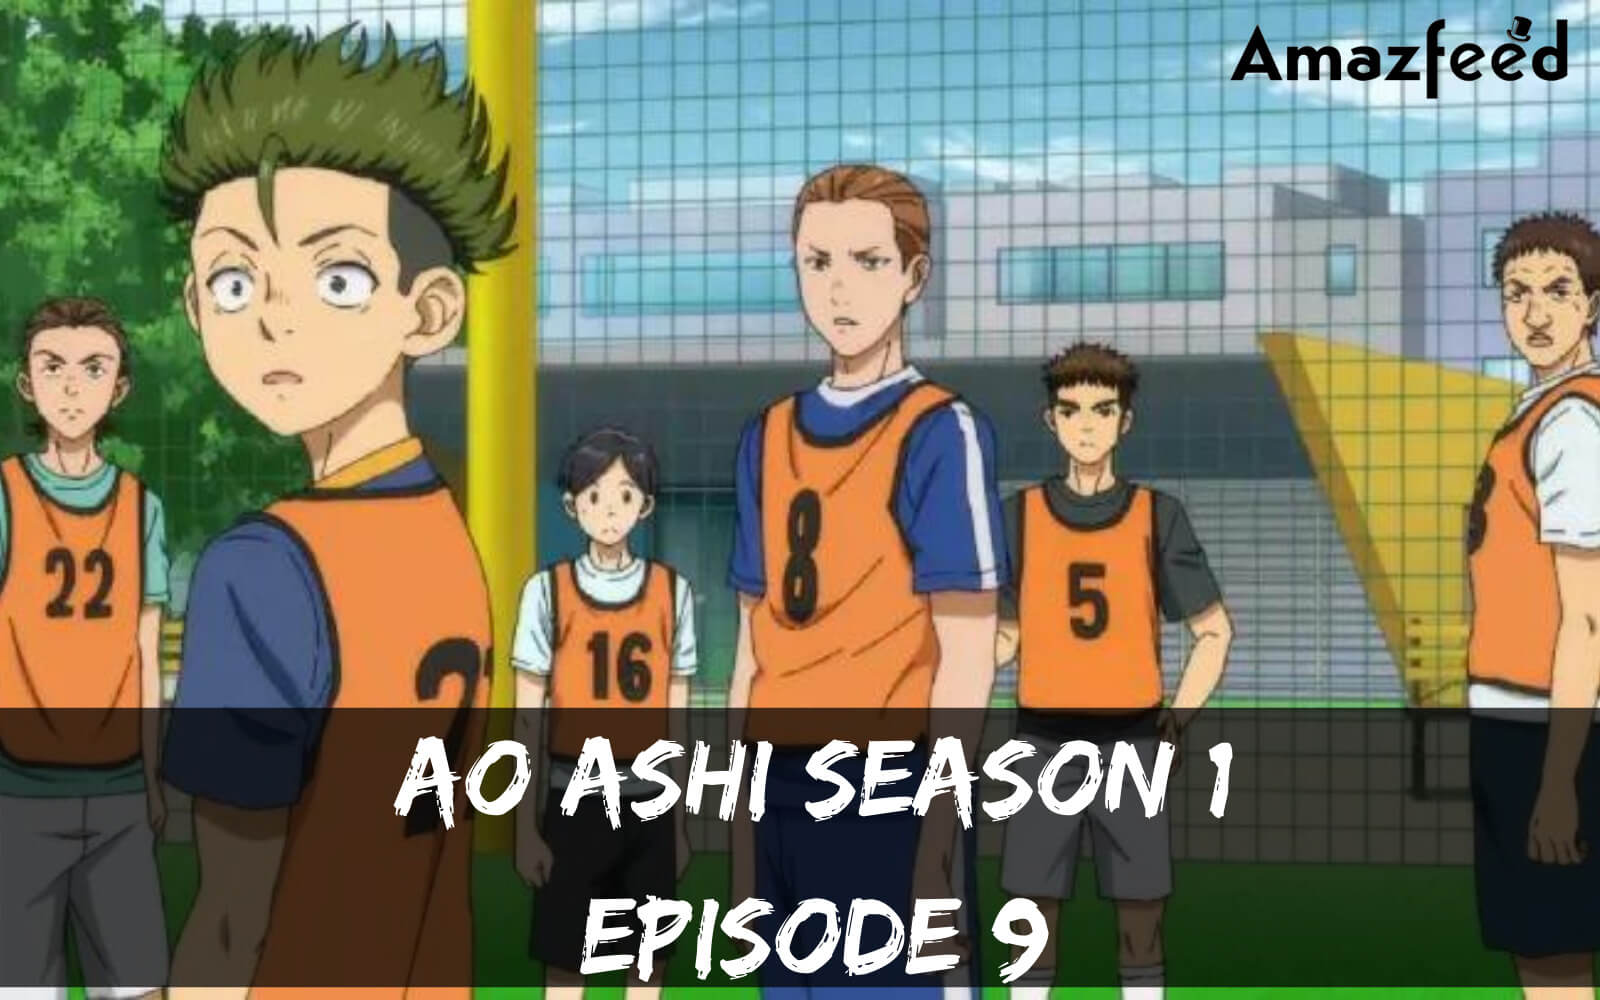 Ao Ashi season 1 Episode 9 release date